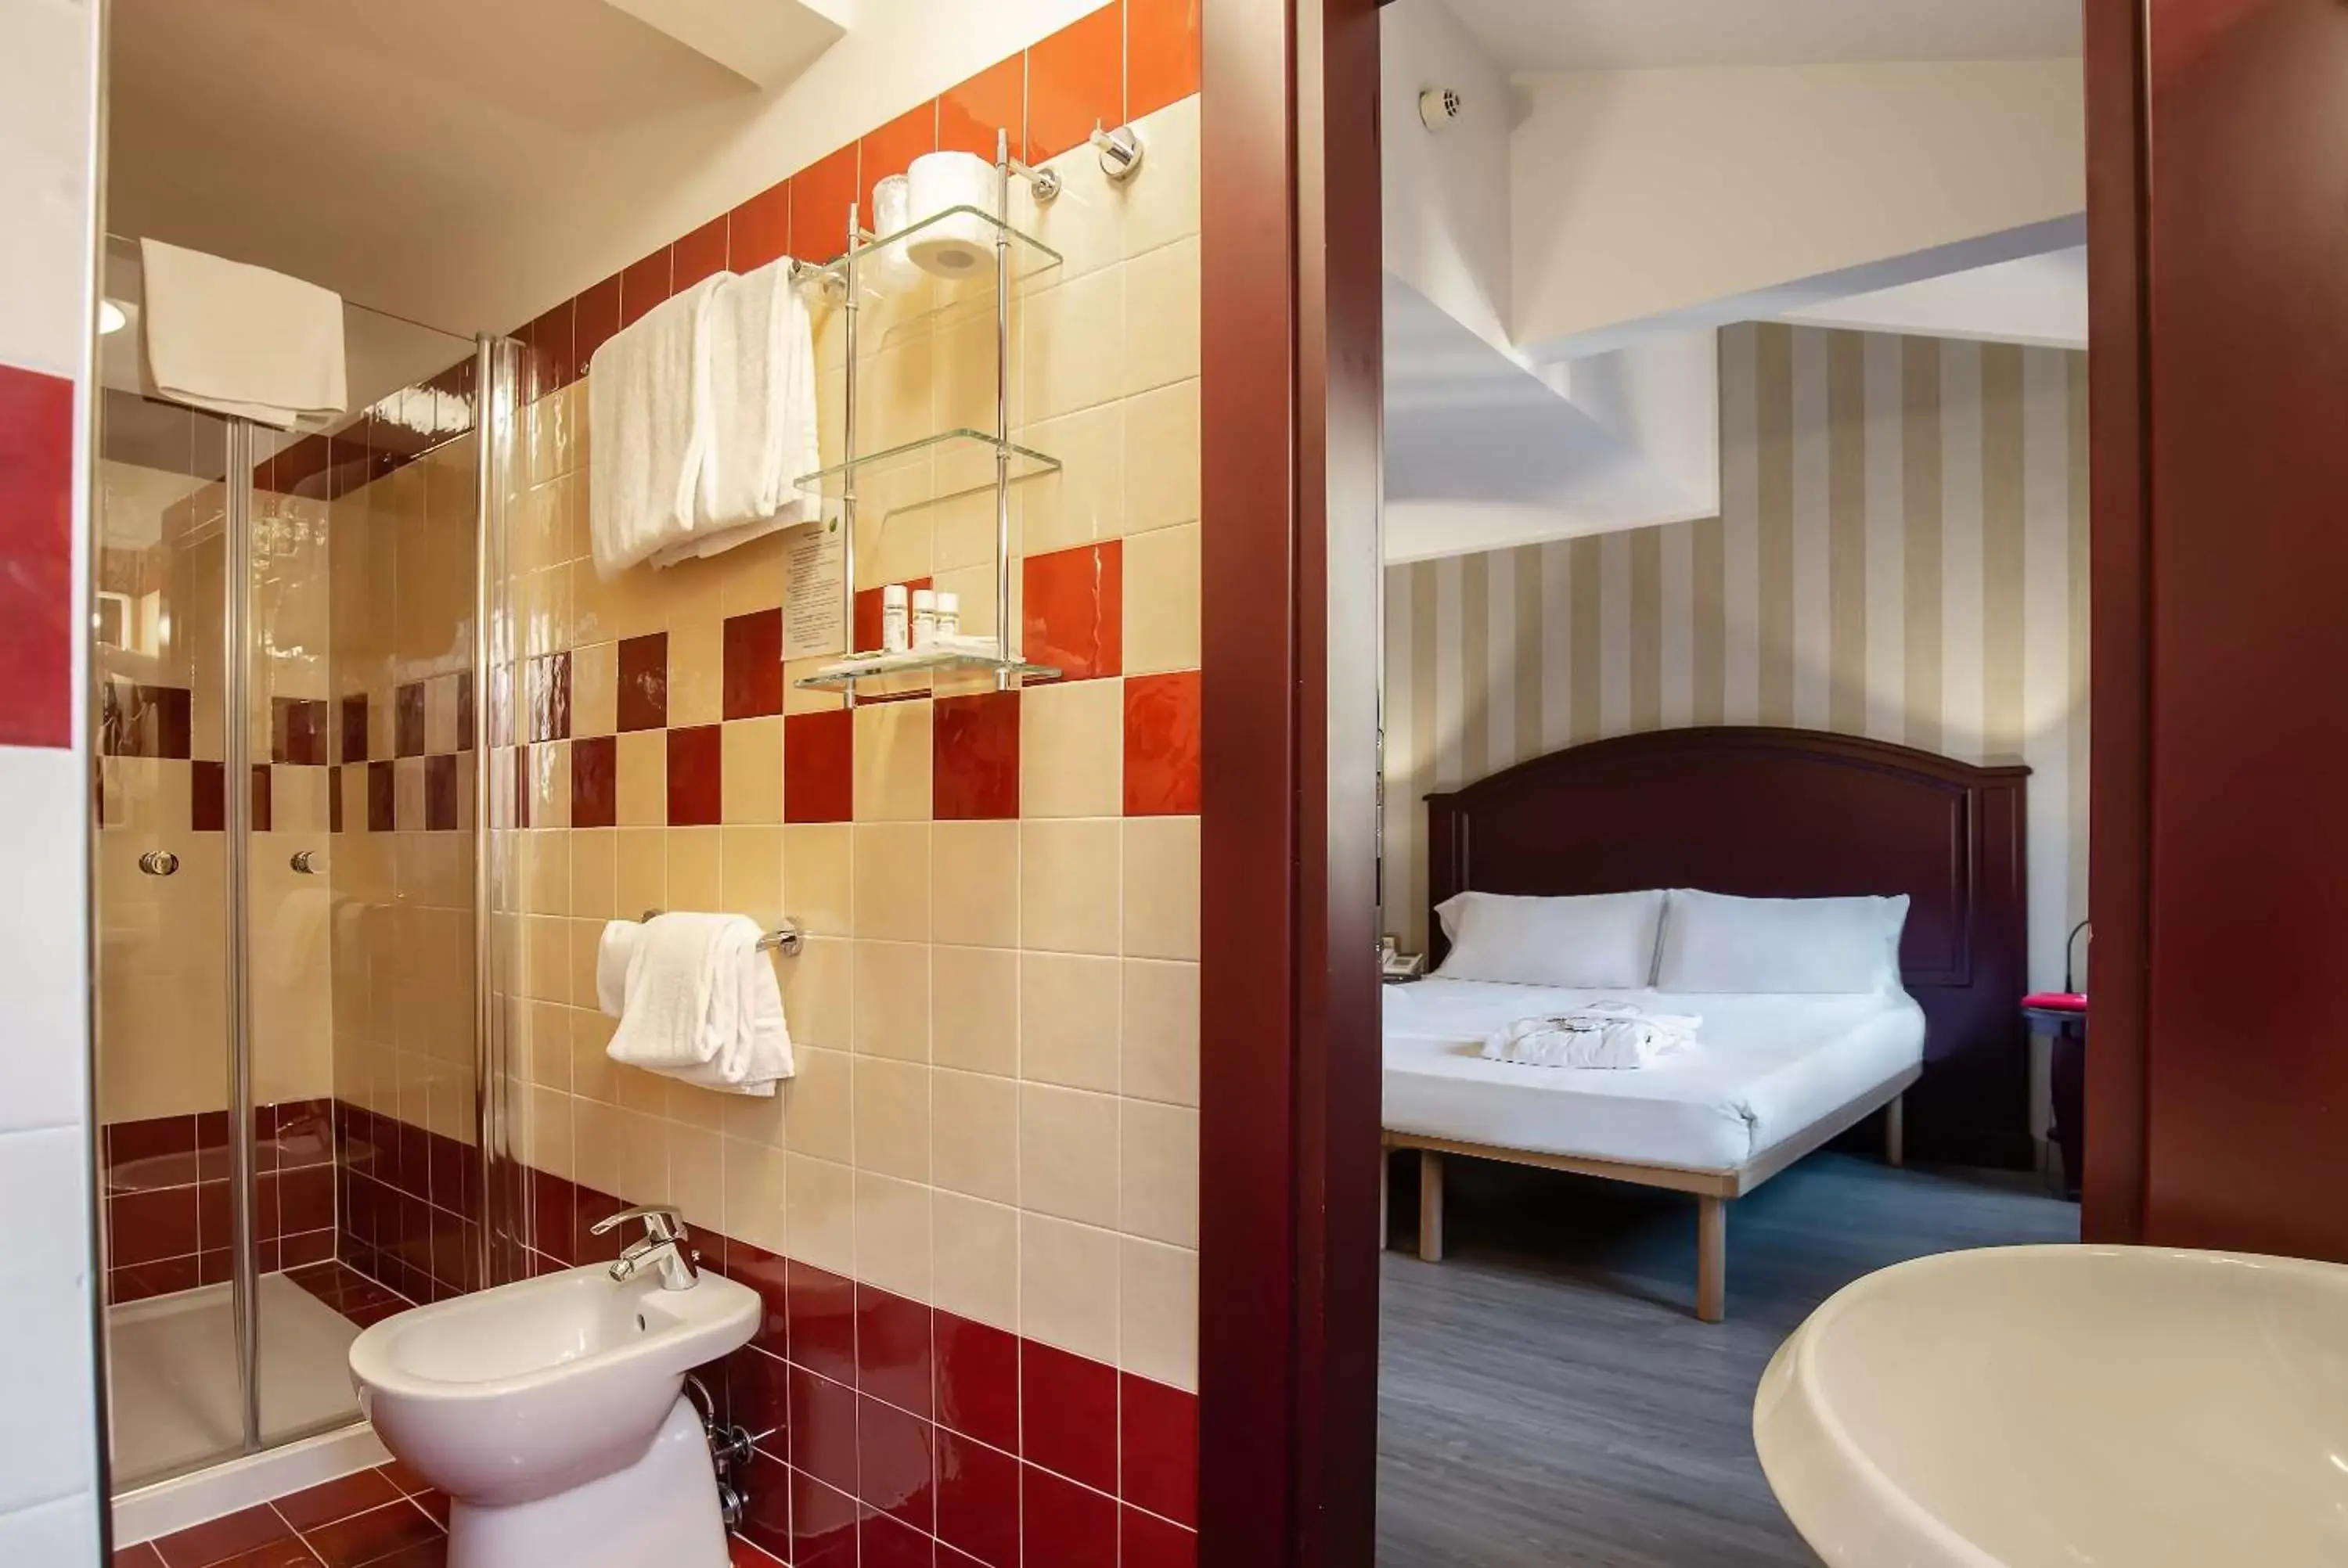 Bedroom, Bathroom in Hotel La Fenice et Des Artistes